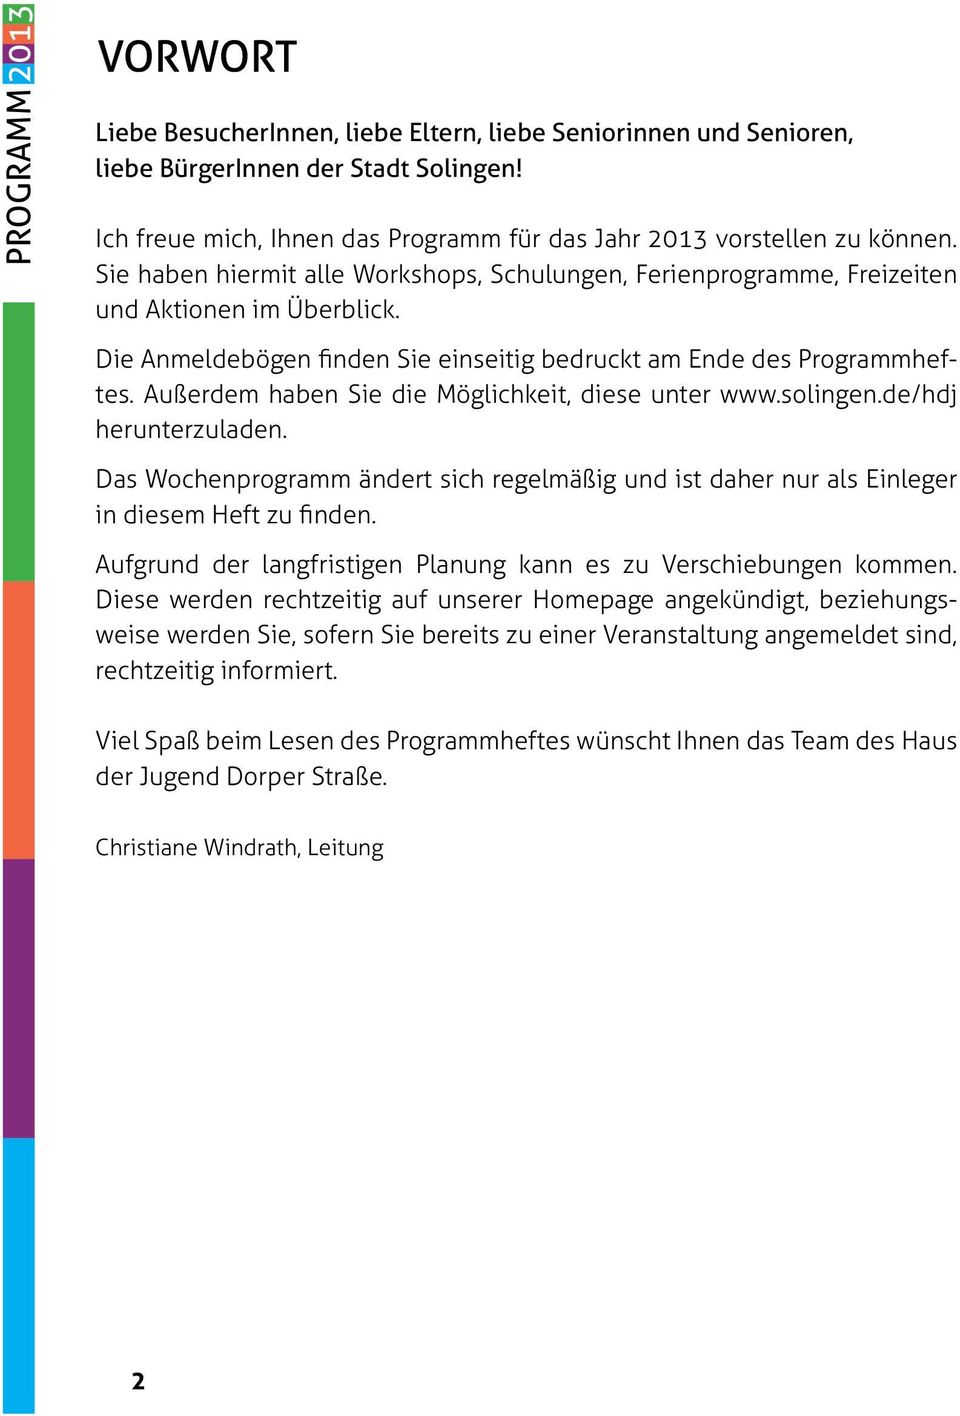 Die Anmeldebögen finden Sie einseitig bedruckt am Ende des Programmheftes. Außerdem haben Sie die Möglichkeit, diese unter www.solingen.de/hdj herunterzuladen.